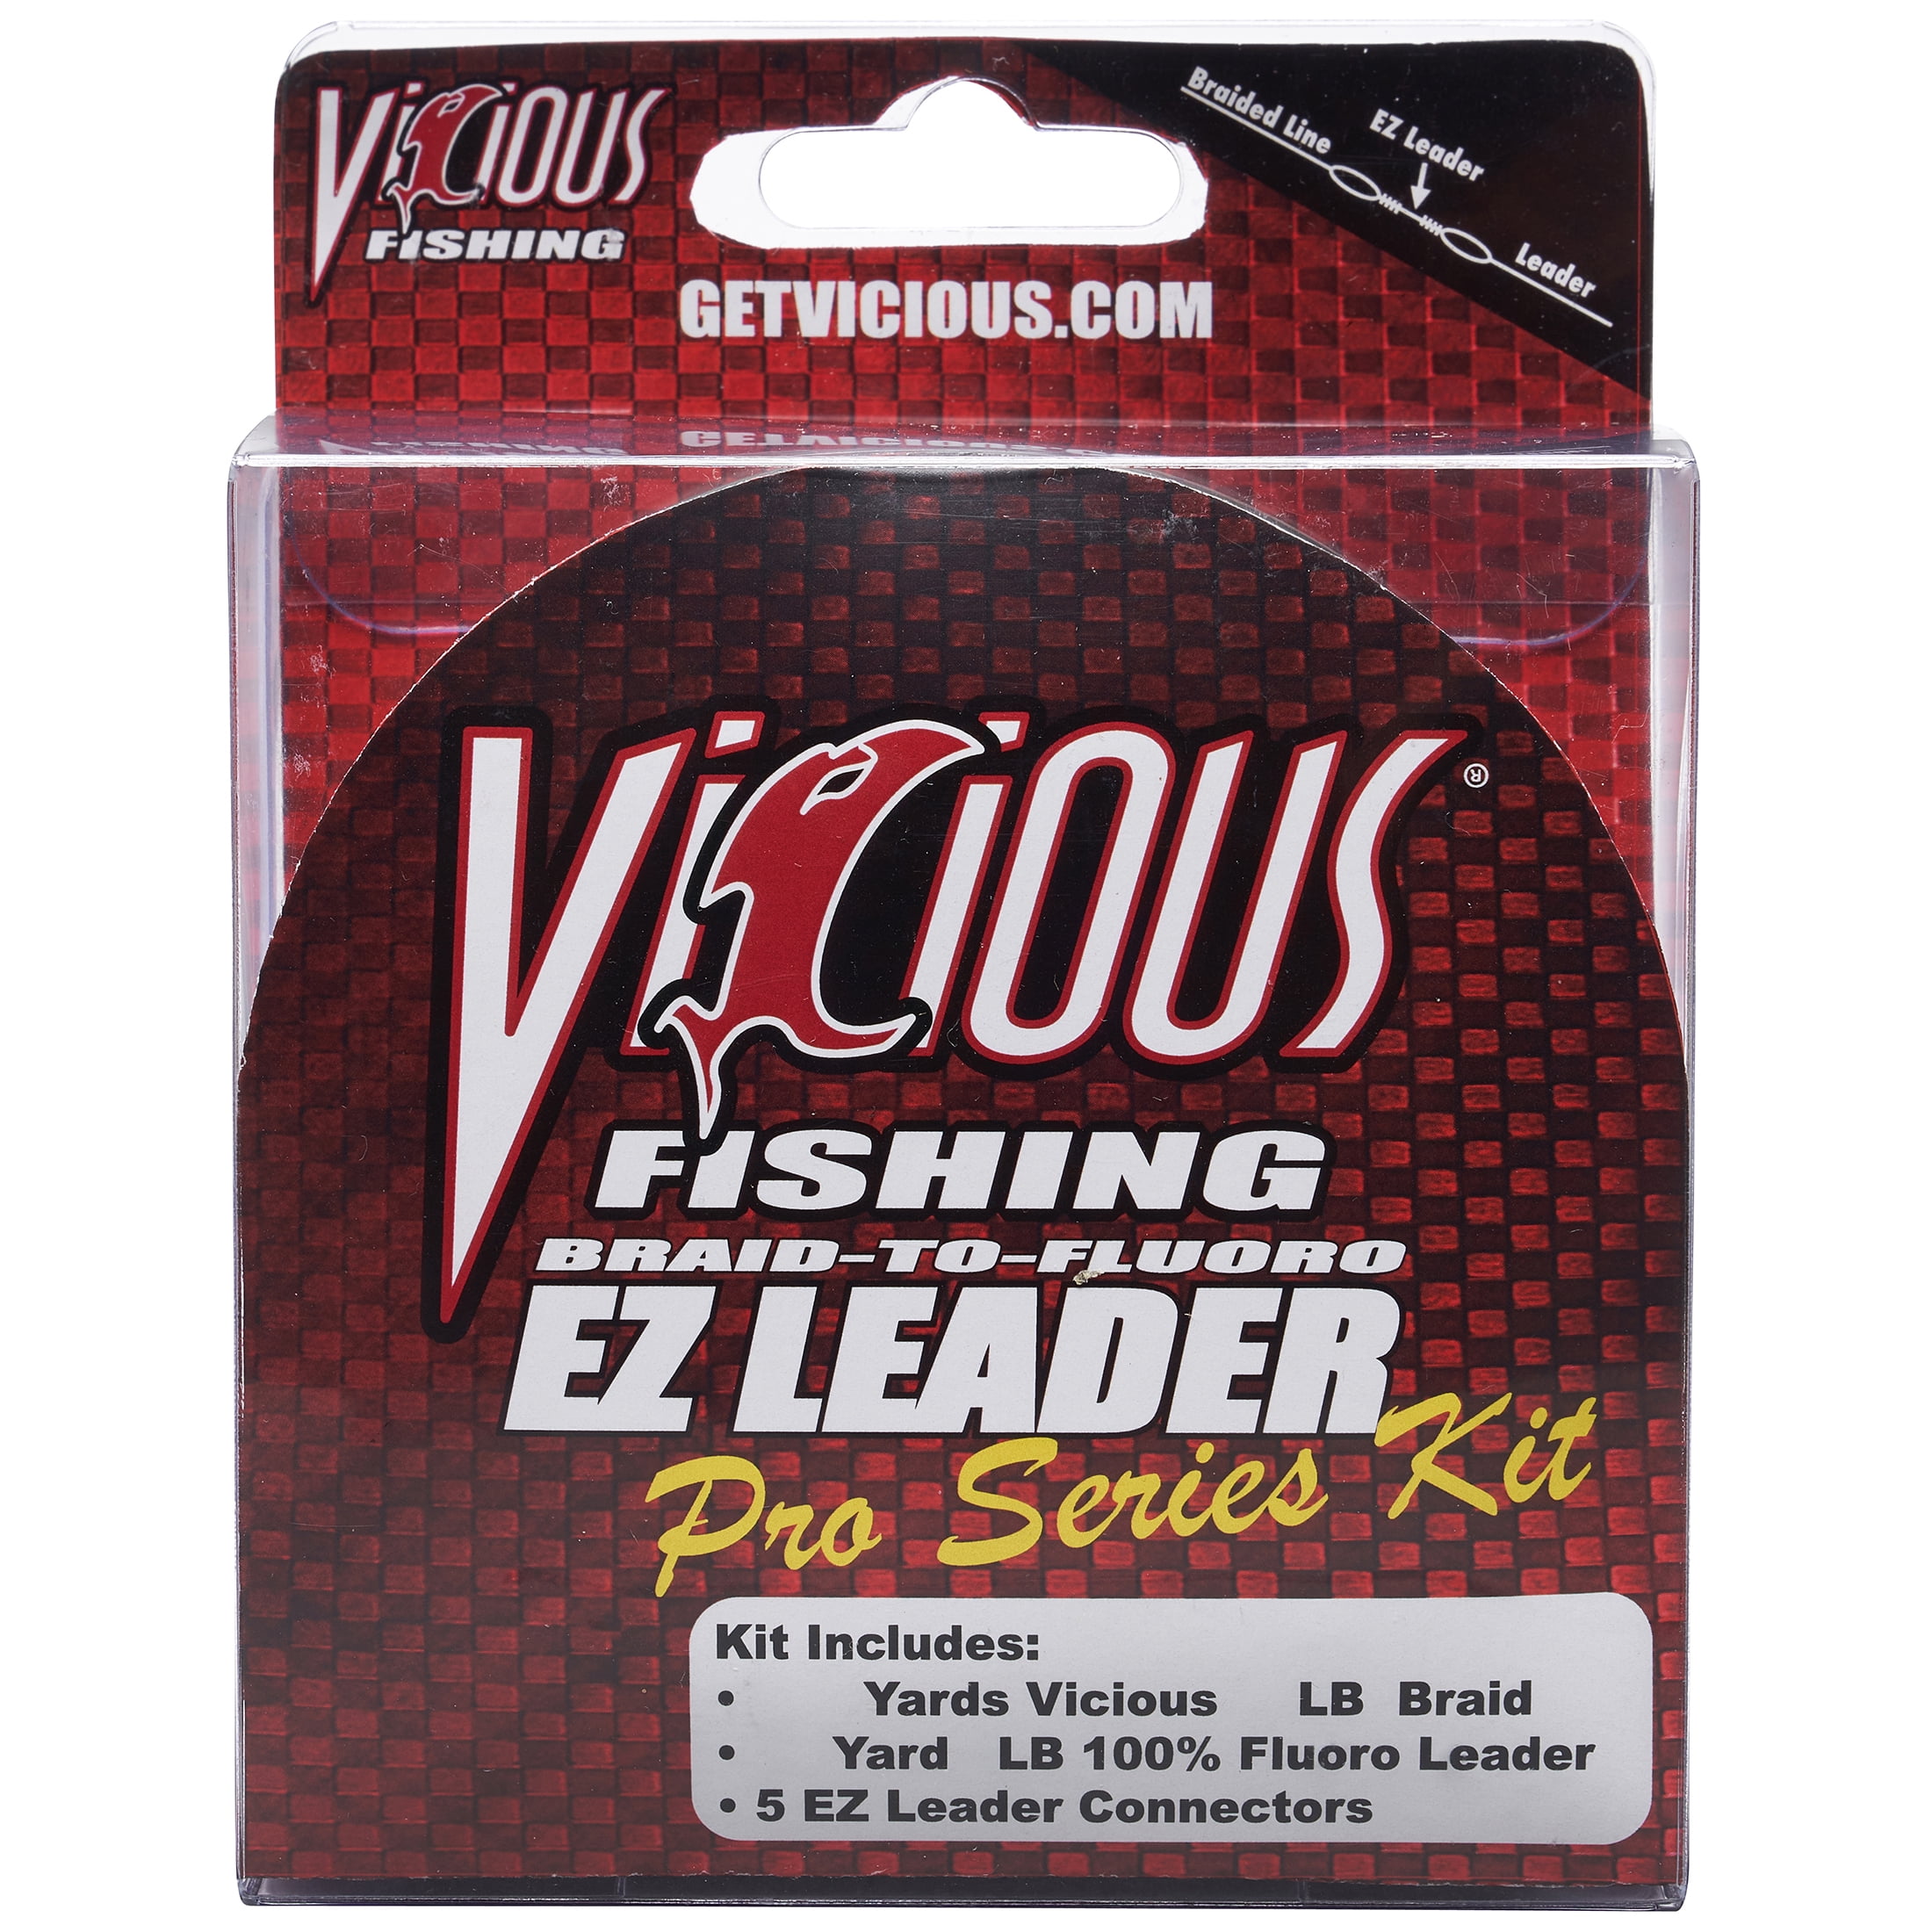 Vicious Fishing No-Fade Hi-Vis Yellow Braid - 20lb, 300 Yards